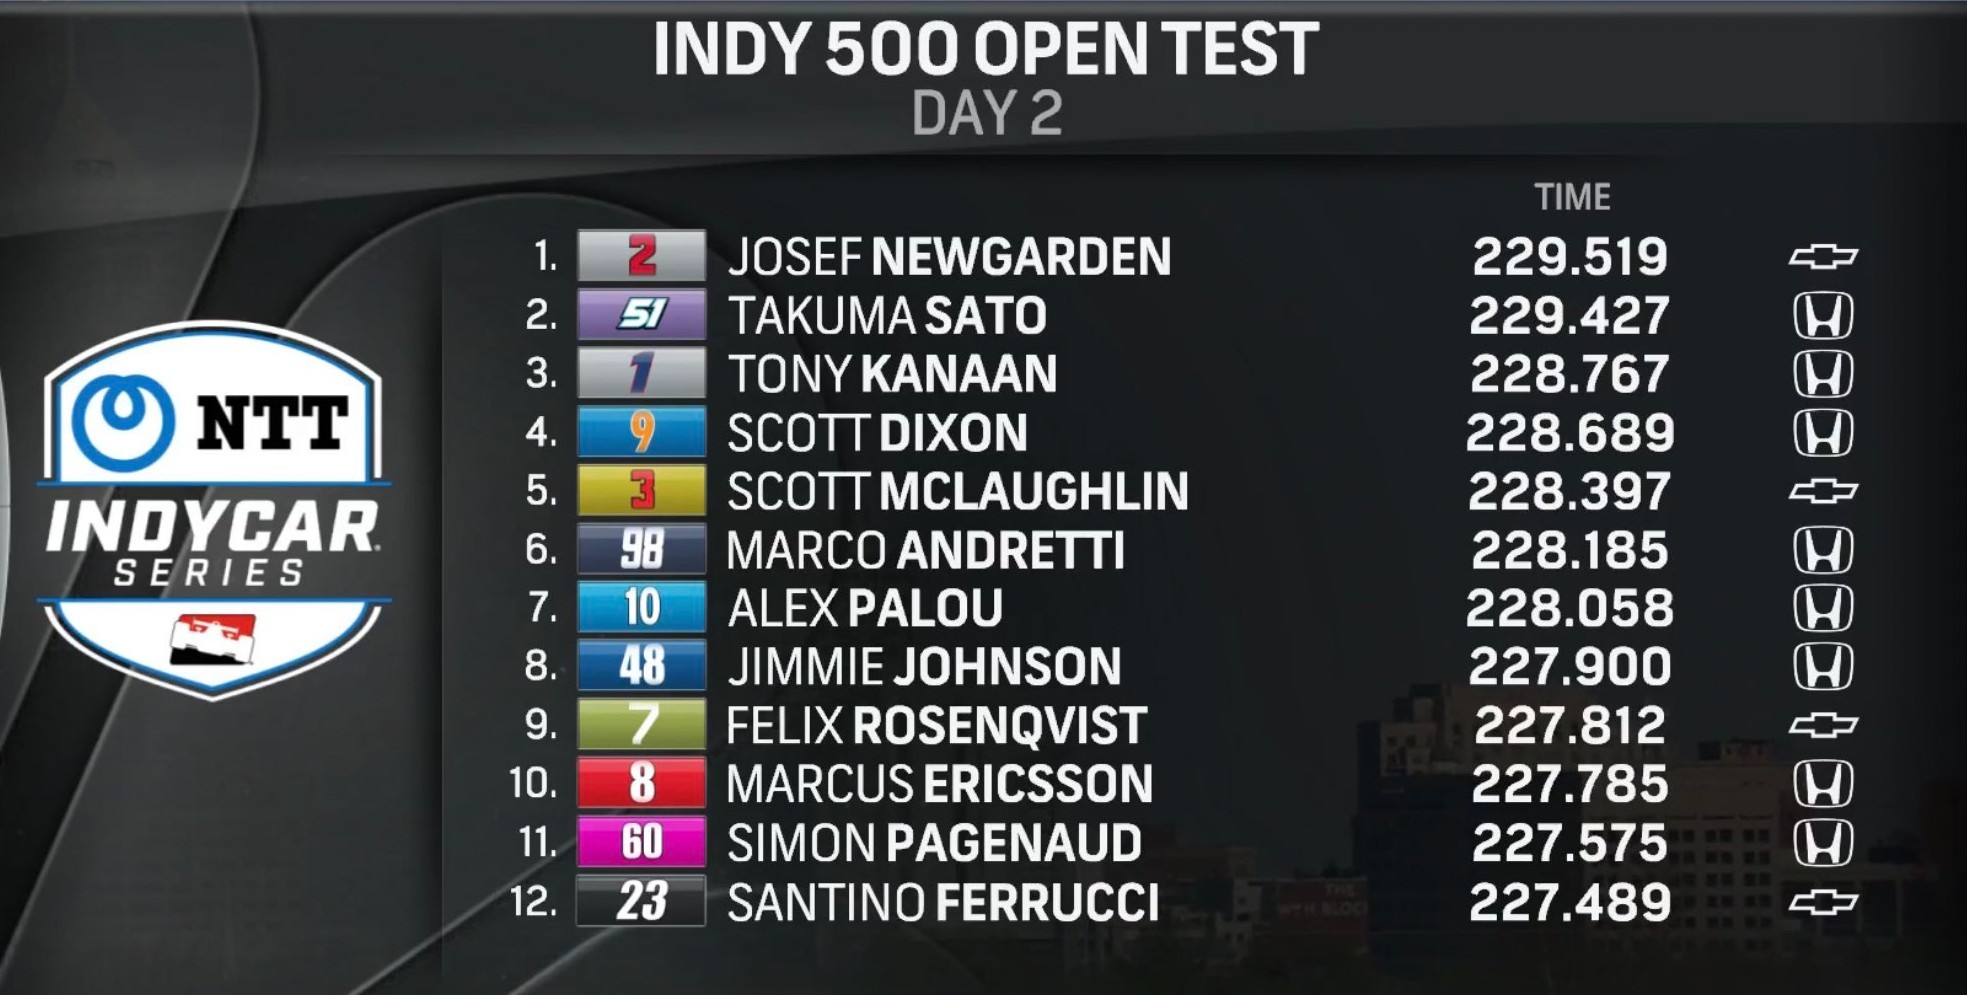 Tabla de tiempos de las primeras 12 posiciones en los test de Indy 500.